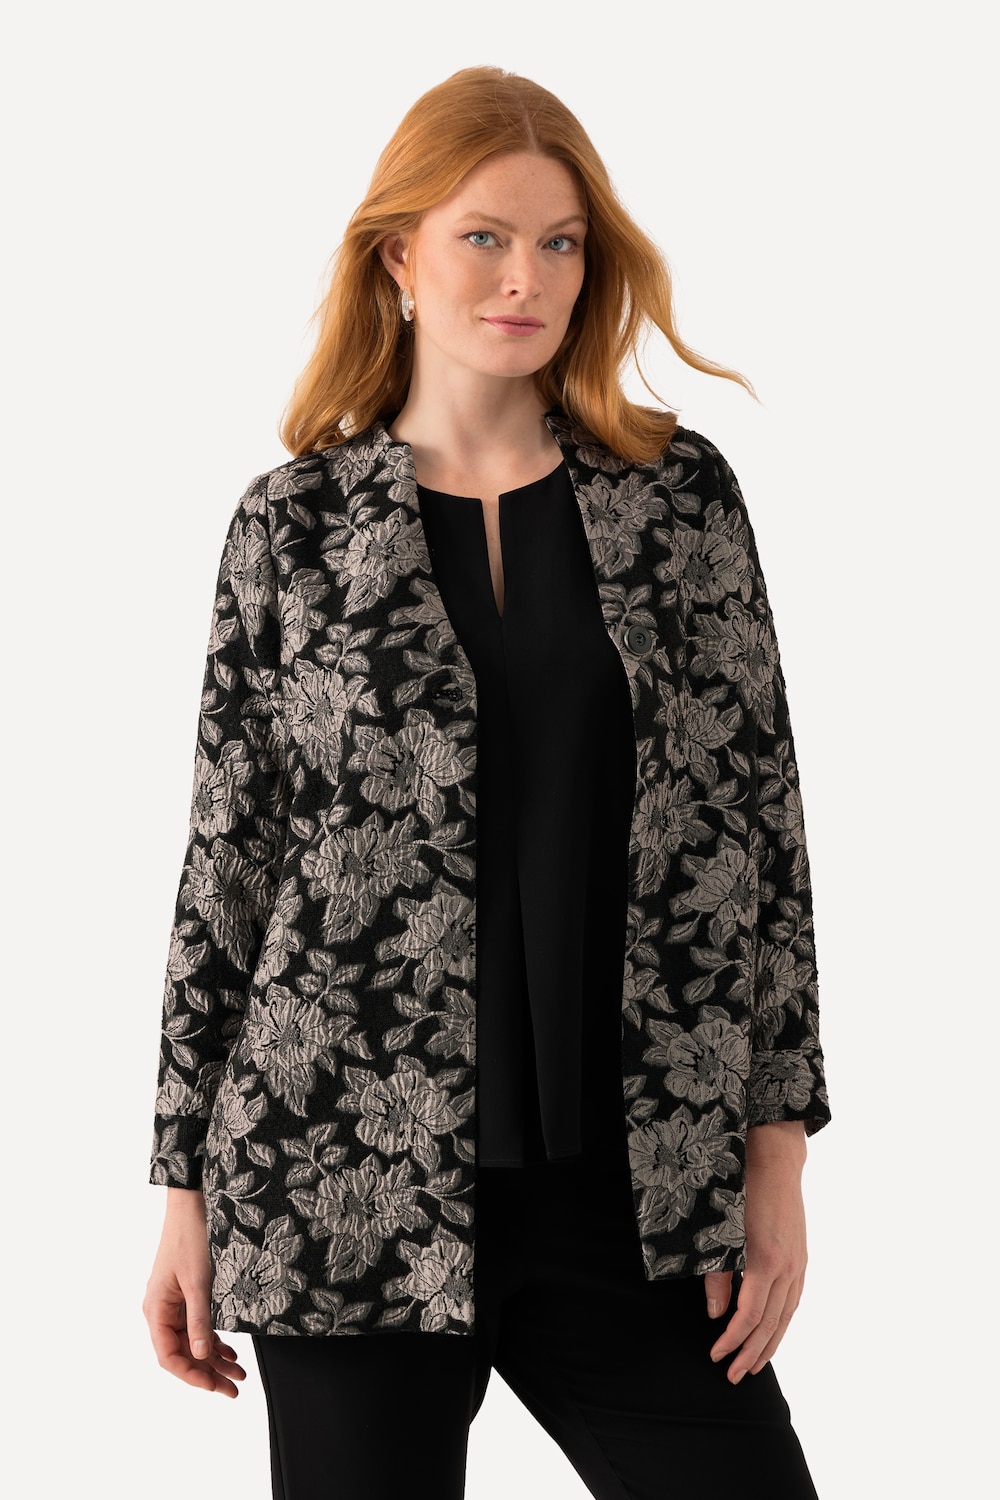 Große Größen Jacke, Damen, schwarz, Größe: 58/60, Polyester/Synthetische Fasern, Ulla Popken